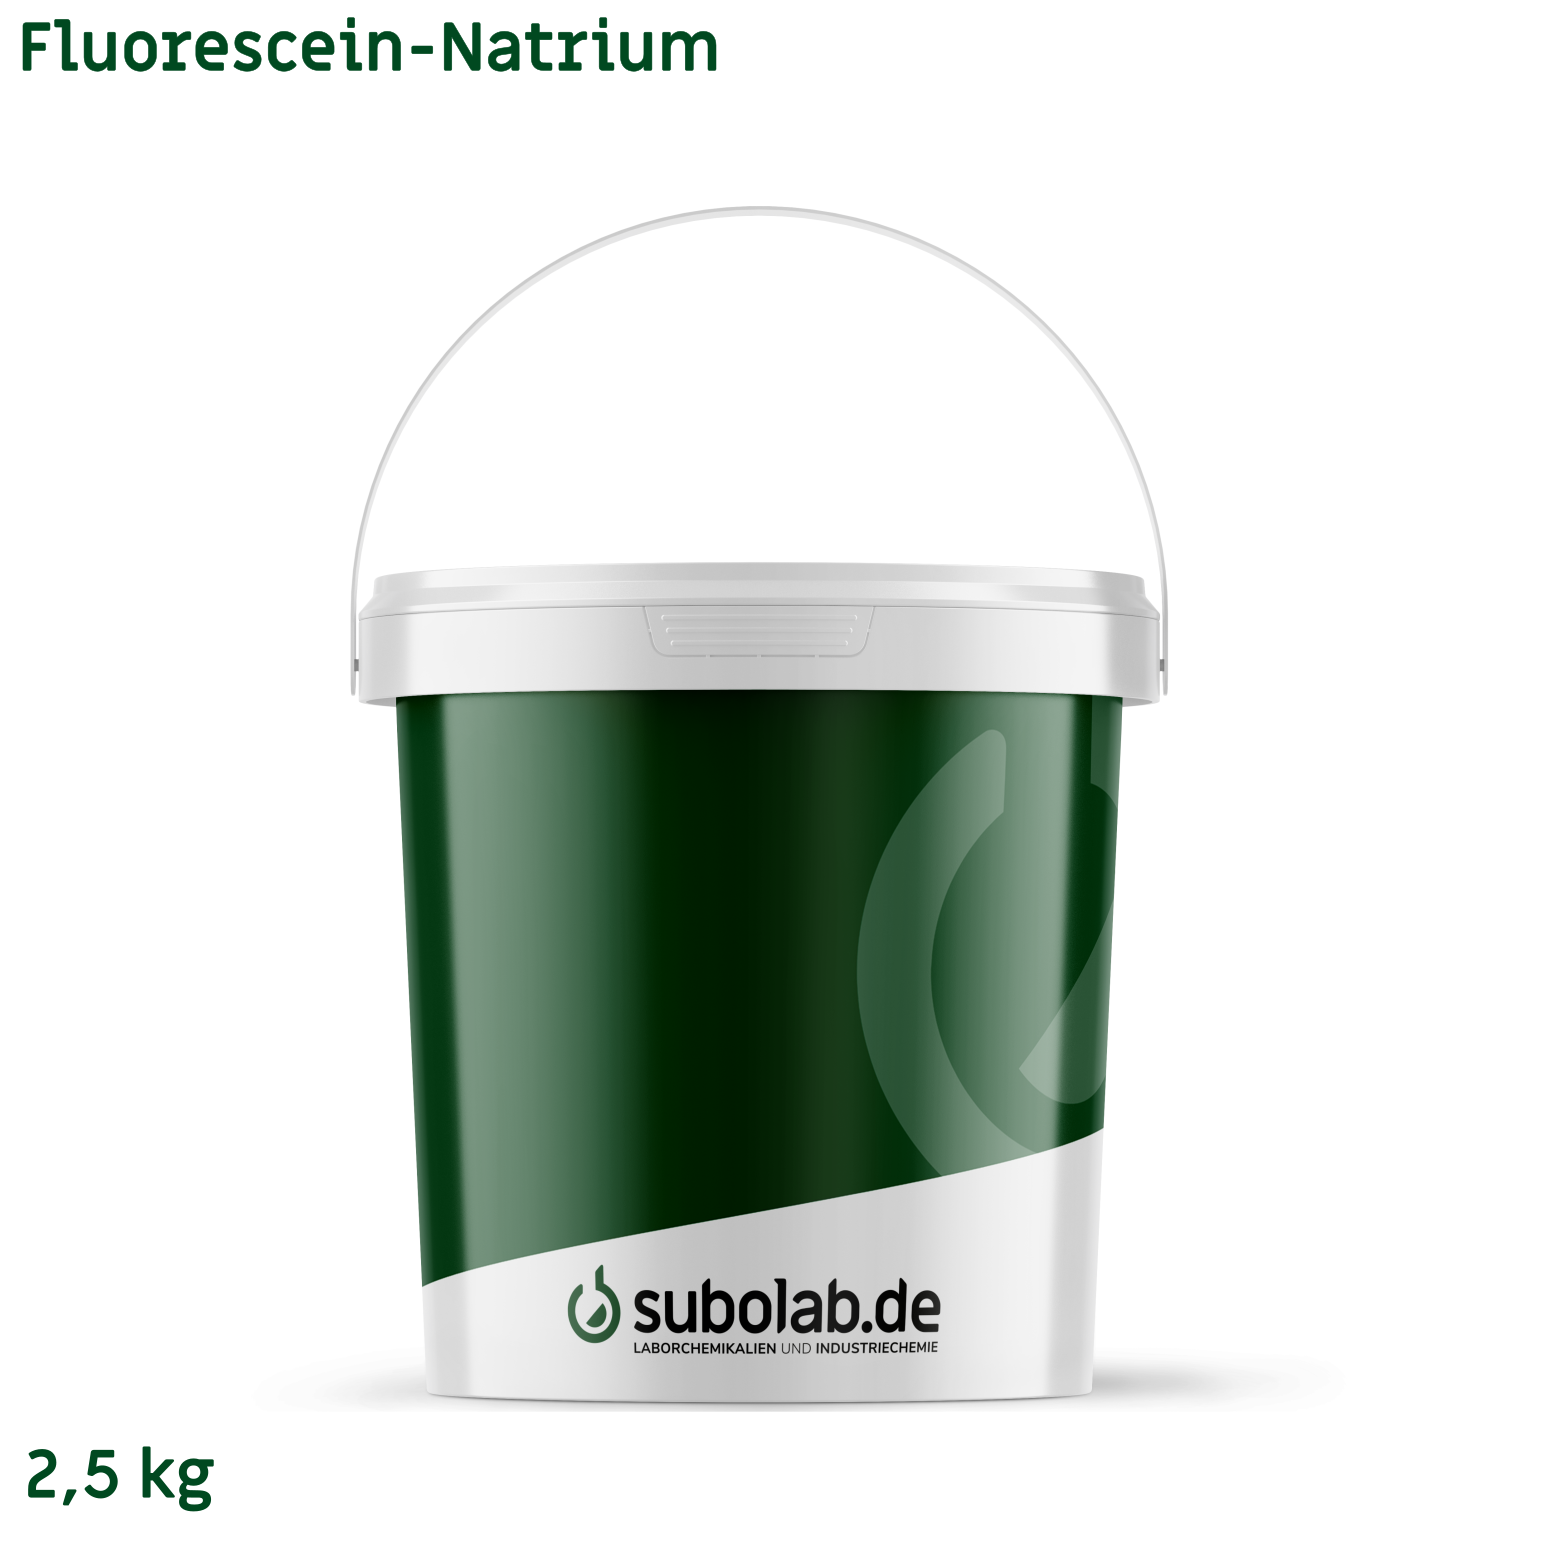 Bild von Fluorescein-Natrium (2,5 kg)